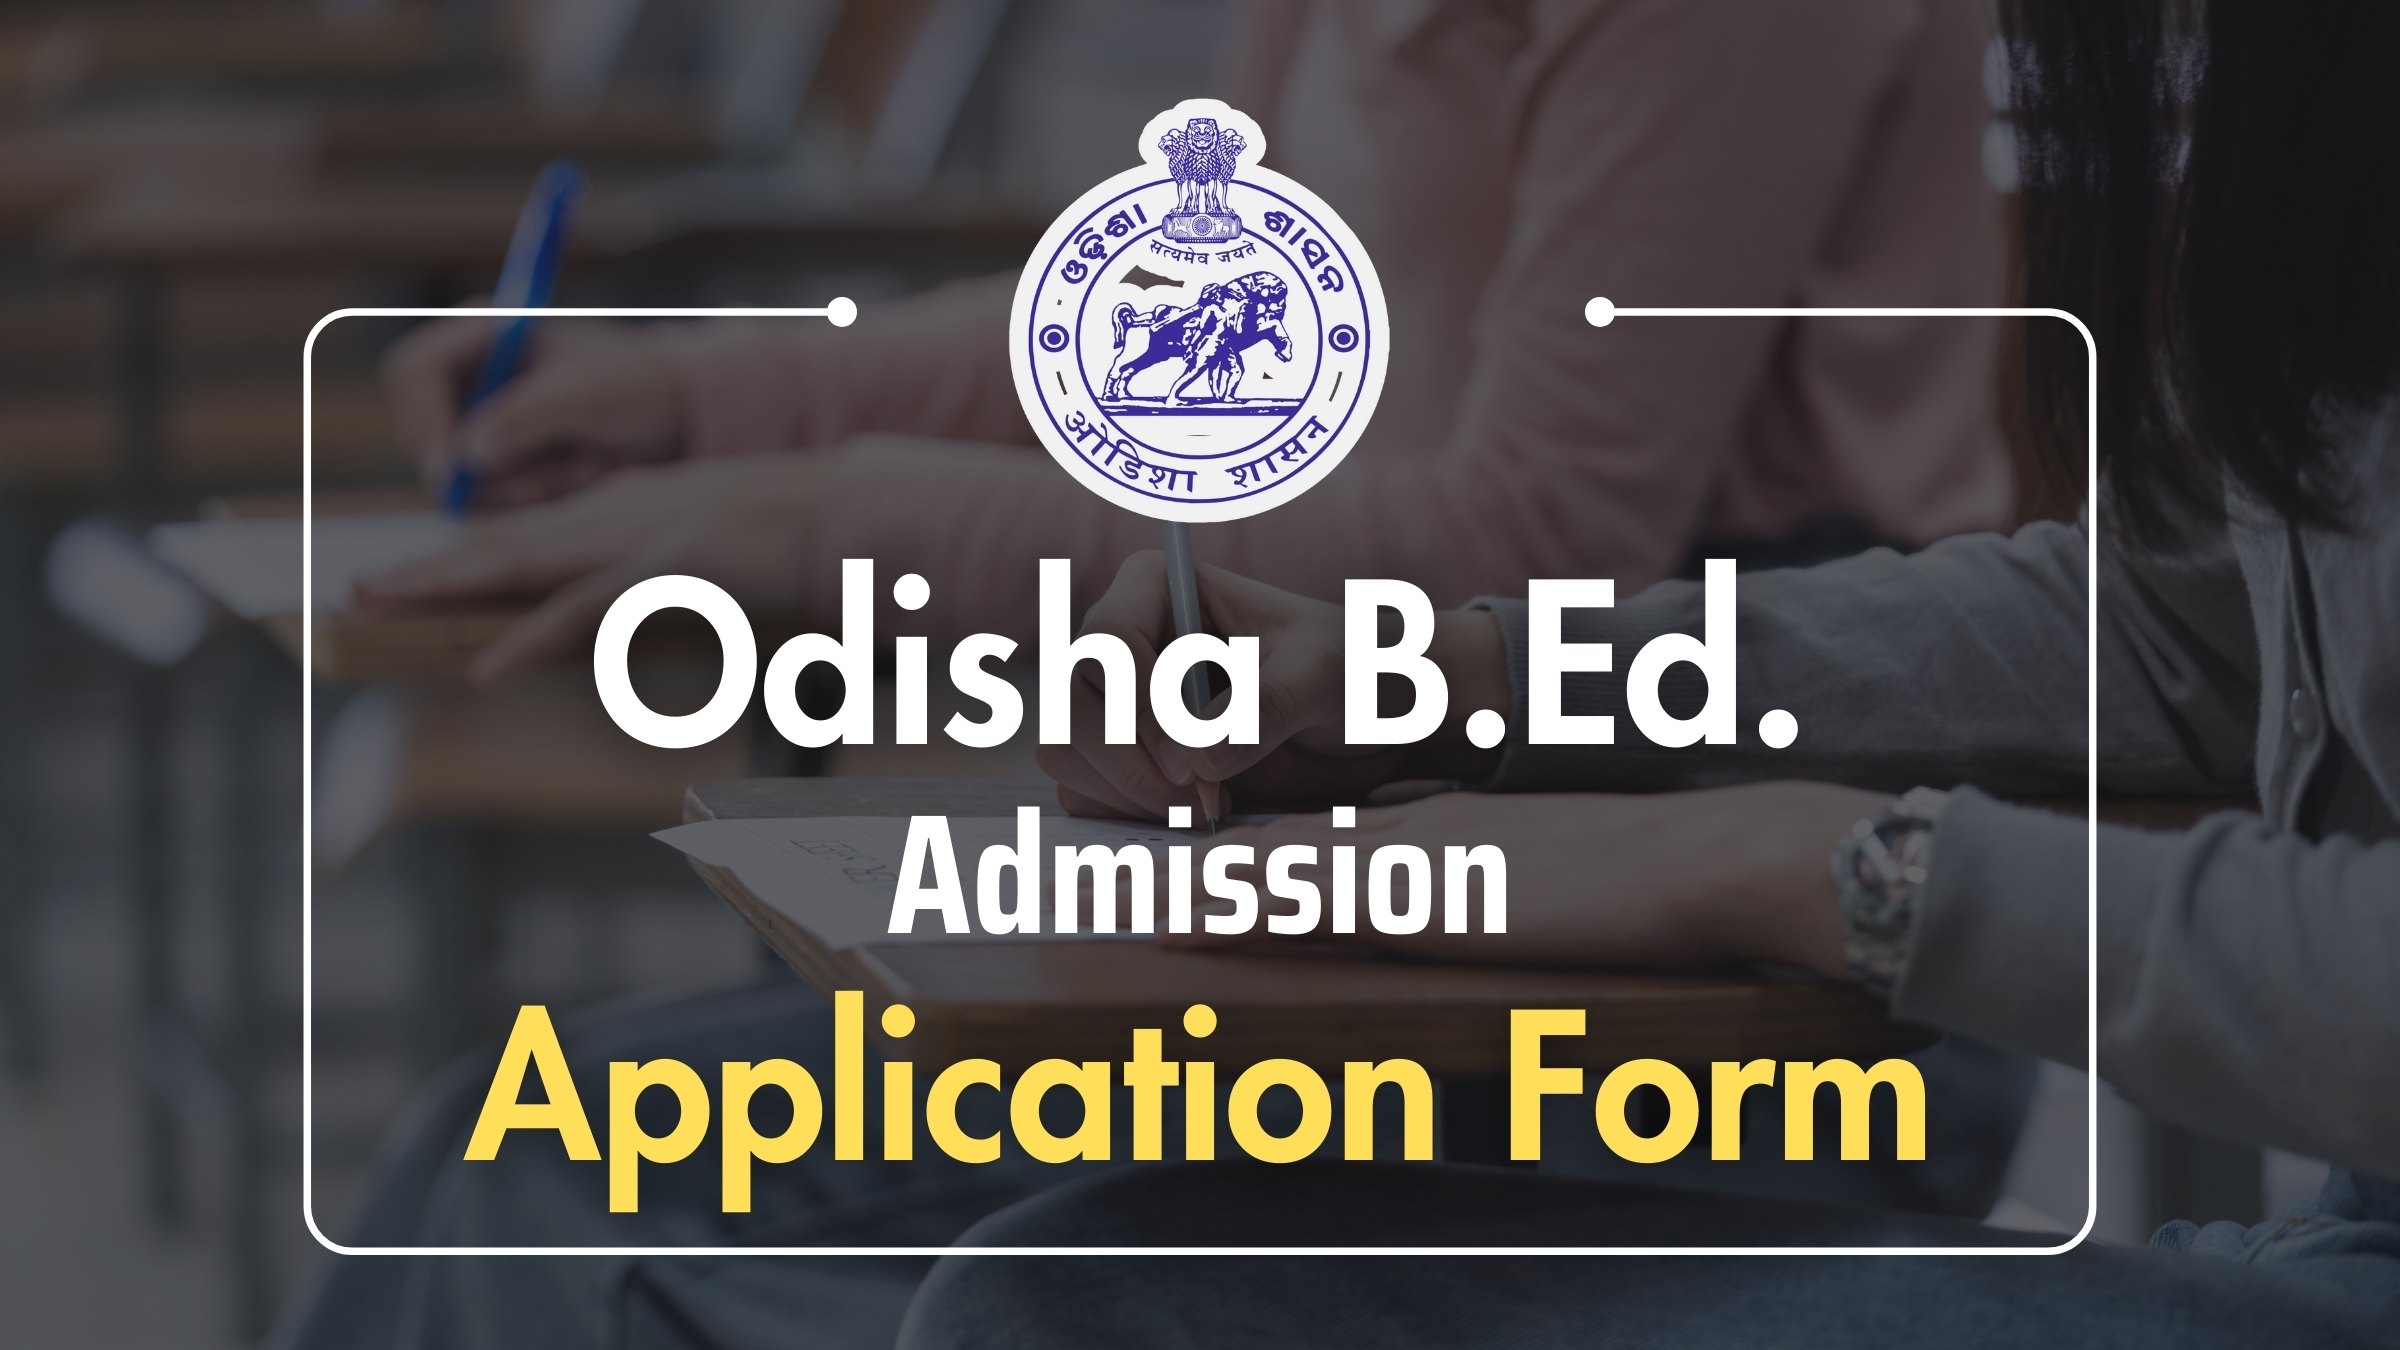 Odisha B.Ed. Admission Form